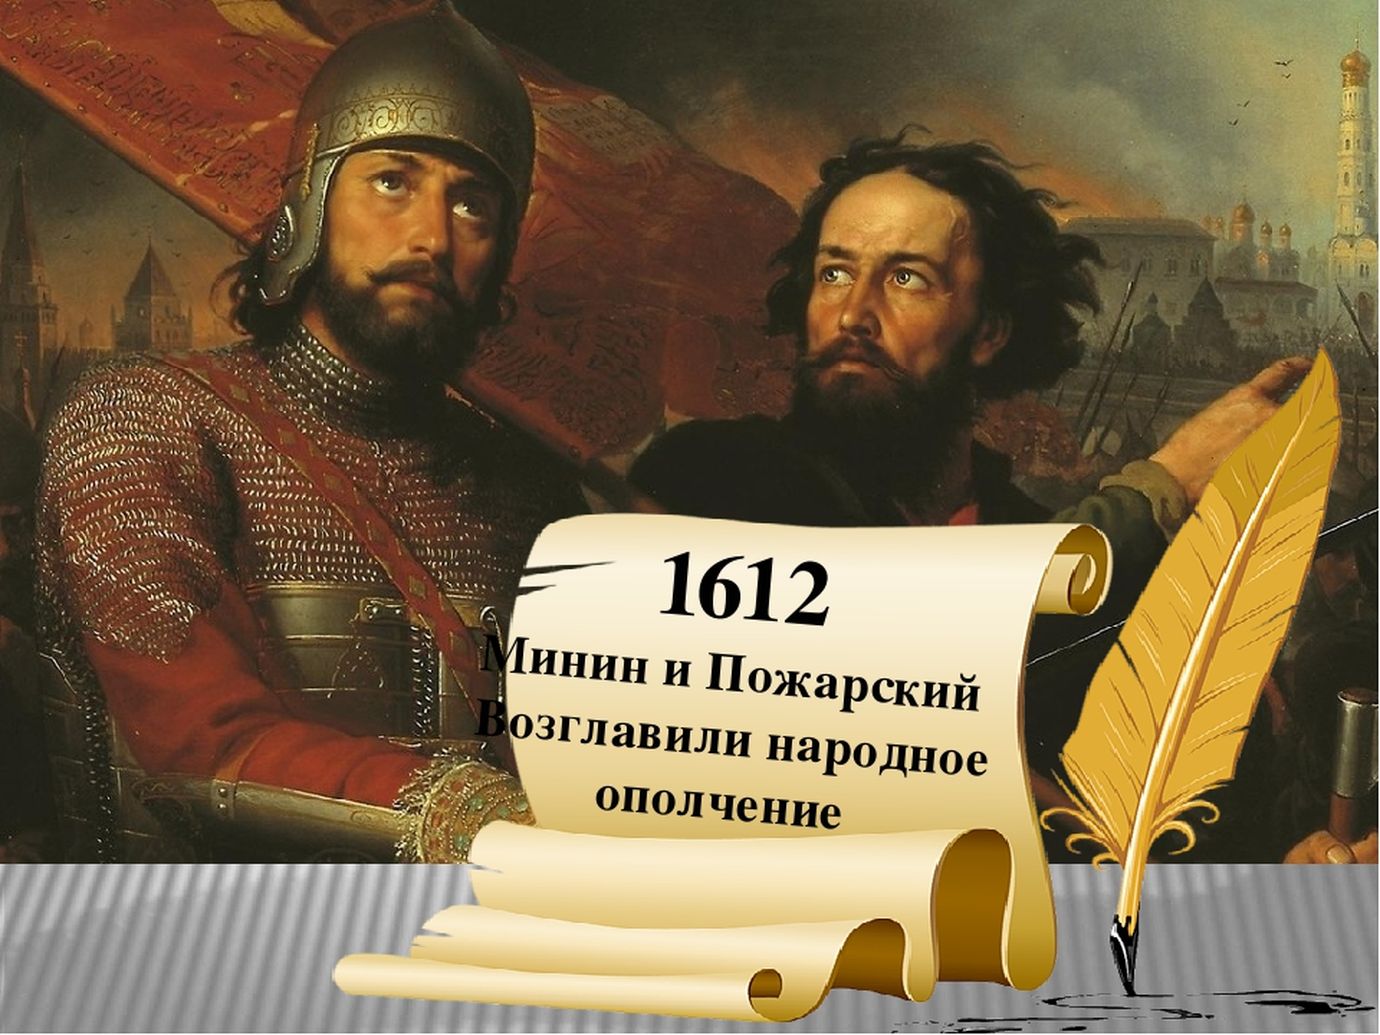 Минин и Пожарский 1612 картина